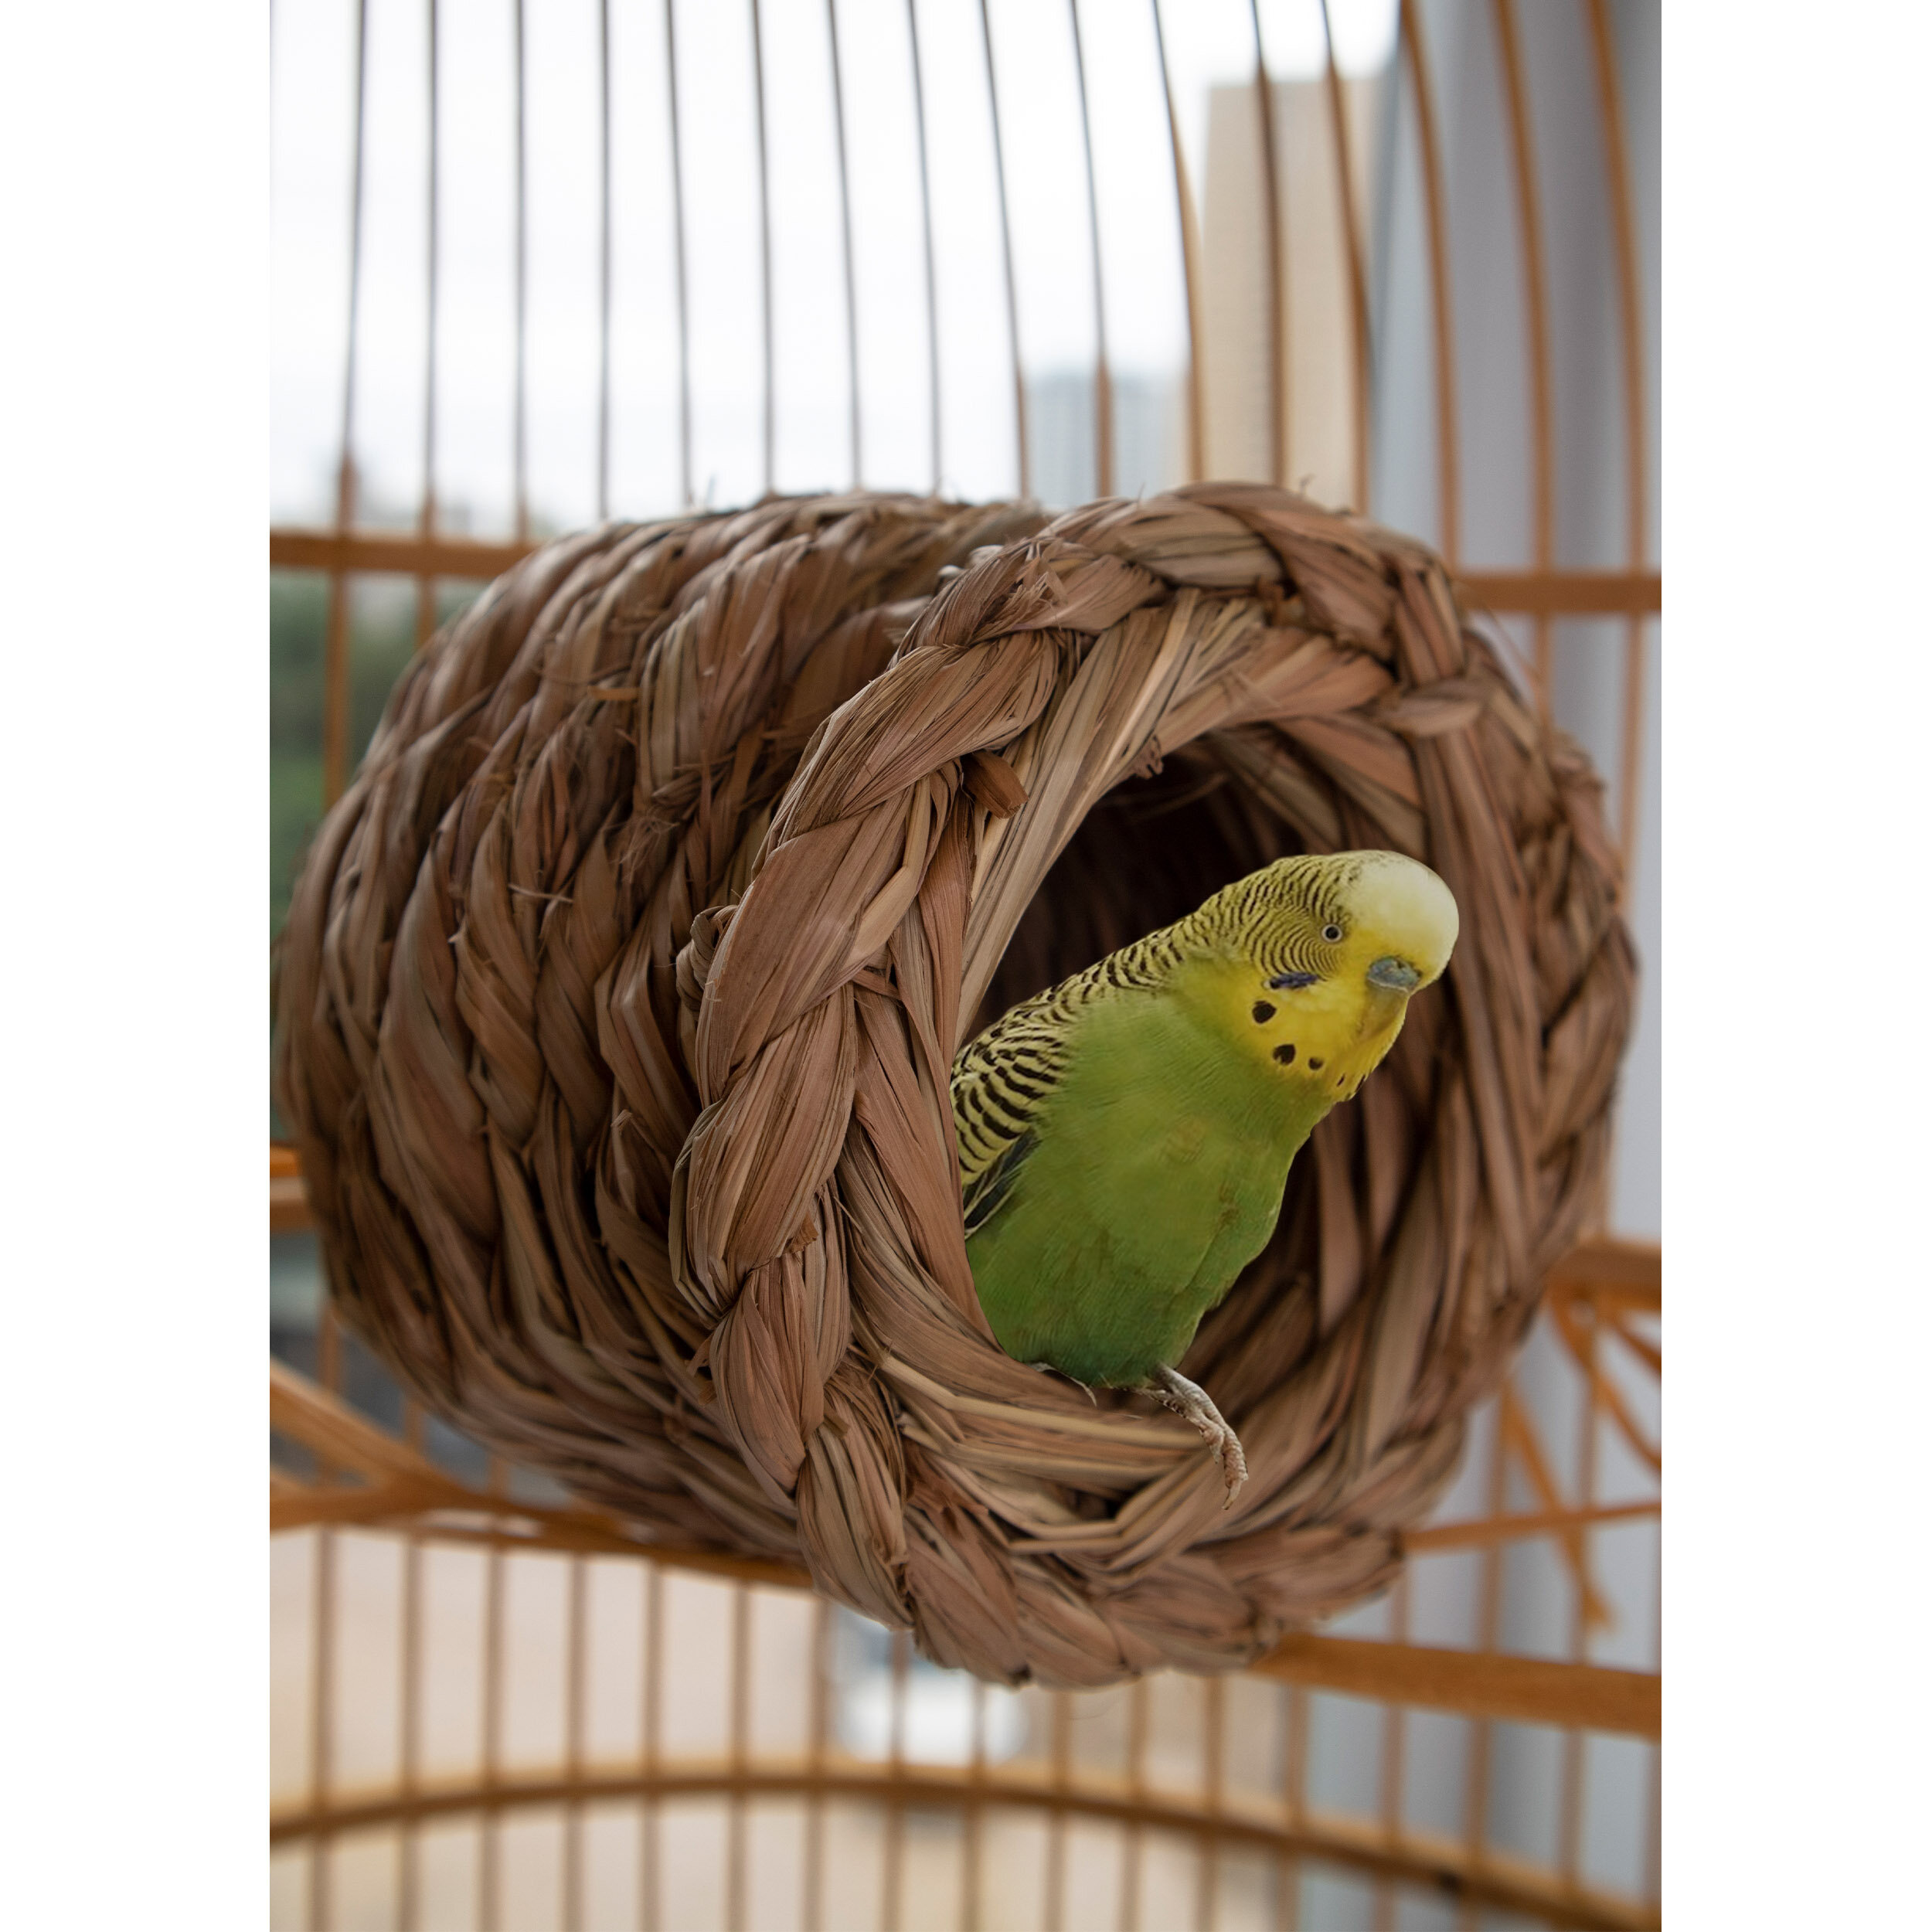 3 Pcs Straw-woven Natural Style Decorative Grass Bird Nest Bird Hideaway